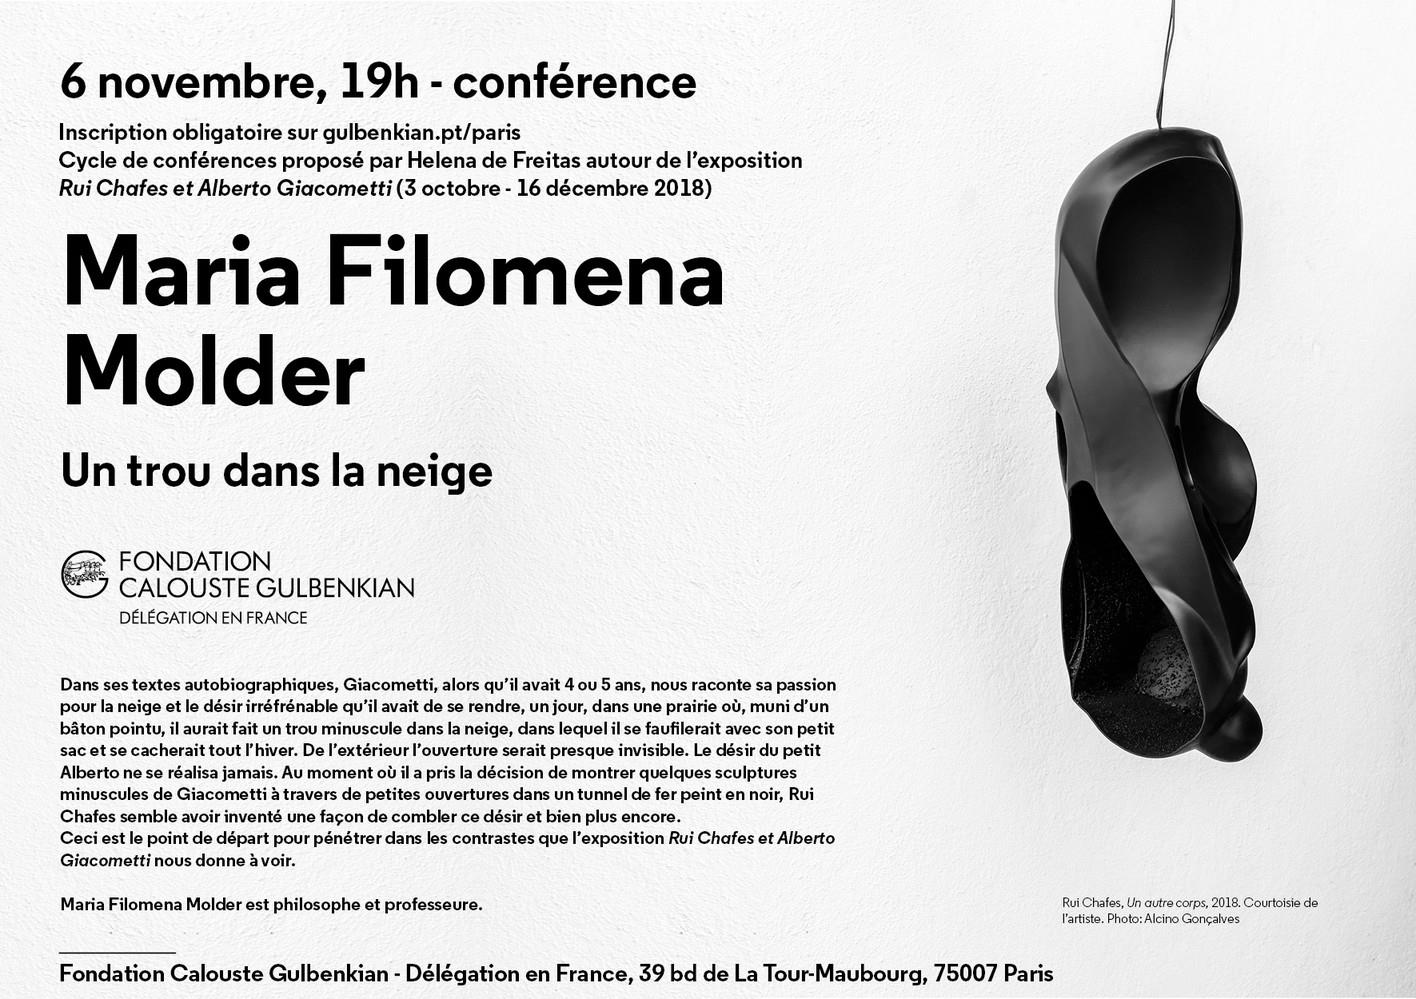 ID103715_Conference_Maria_Filomena_Molder